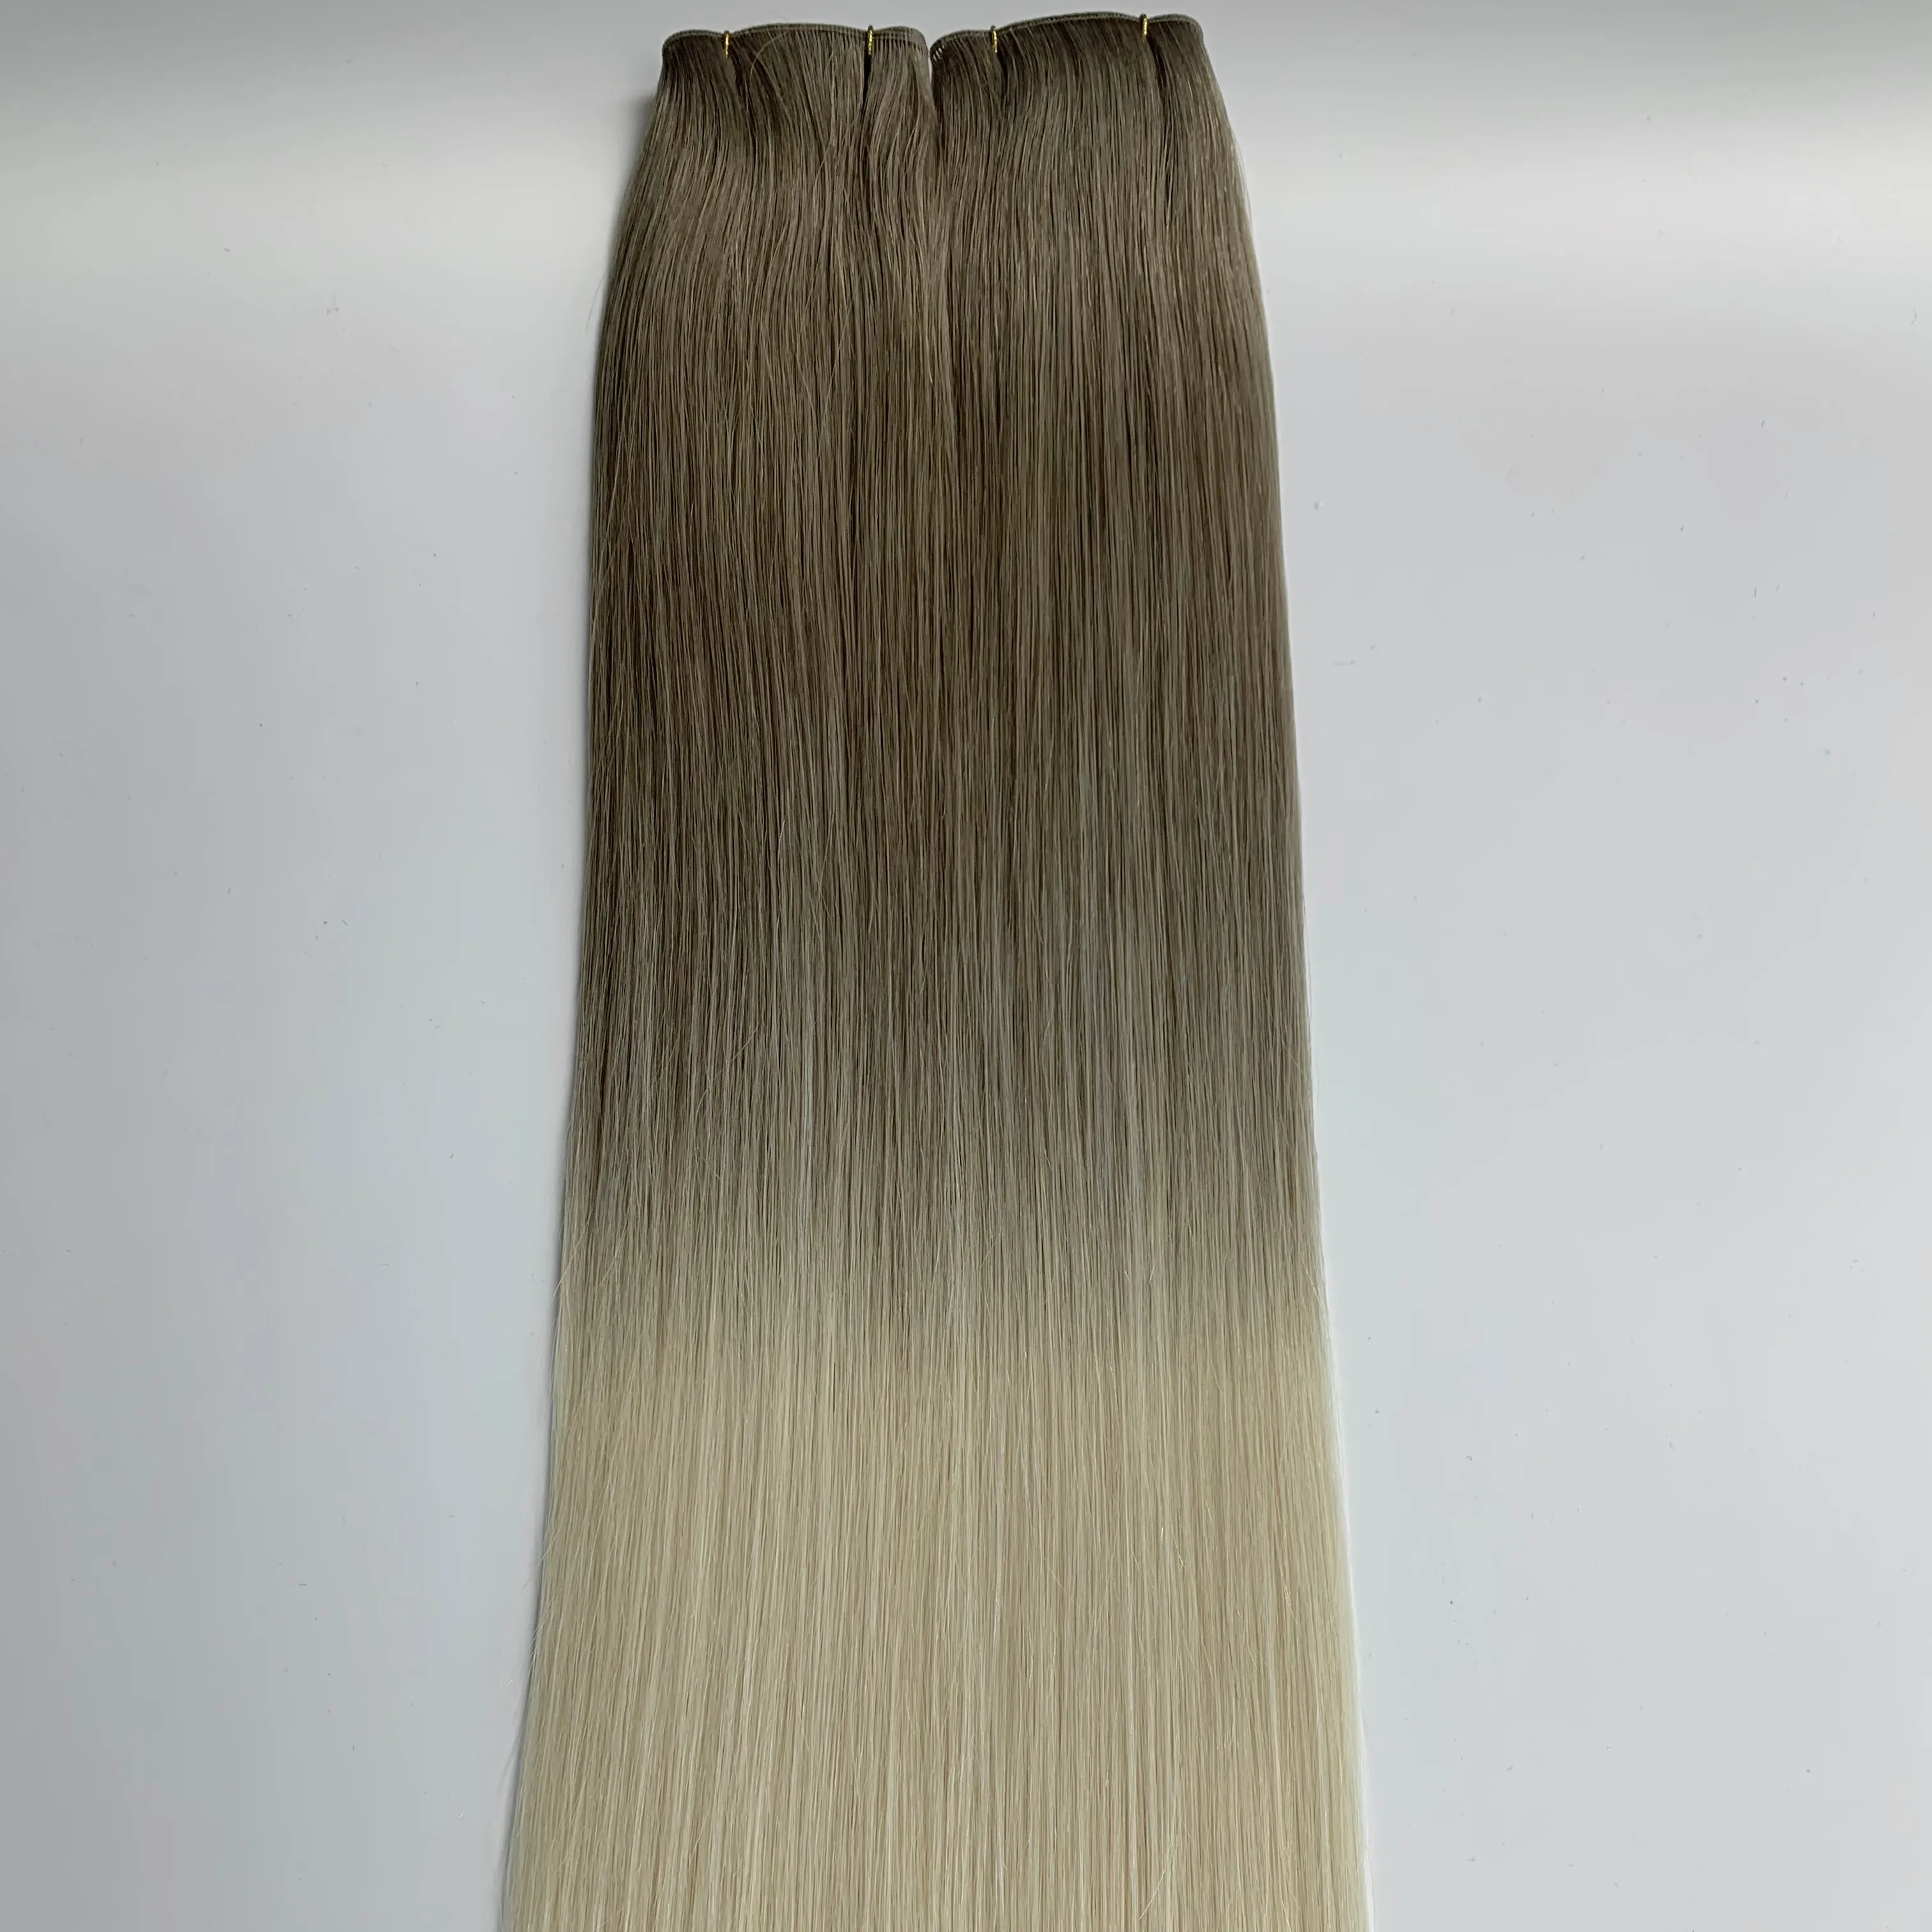 Russische Dunne Onzichtbare Haarextensies Dubbel Getekend Geen Terugkeer Kan Worden Gesneden Remy Europese Geniale Inslag Hair Extensions